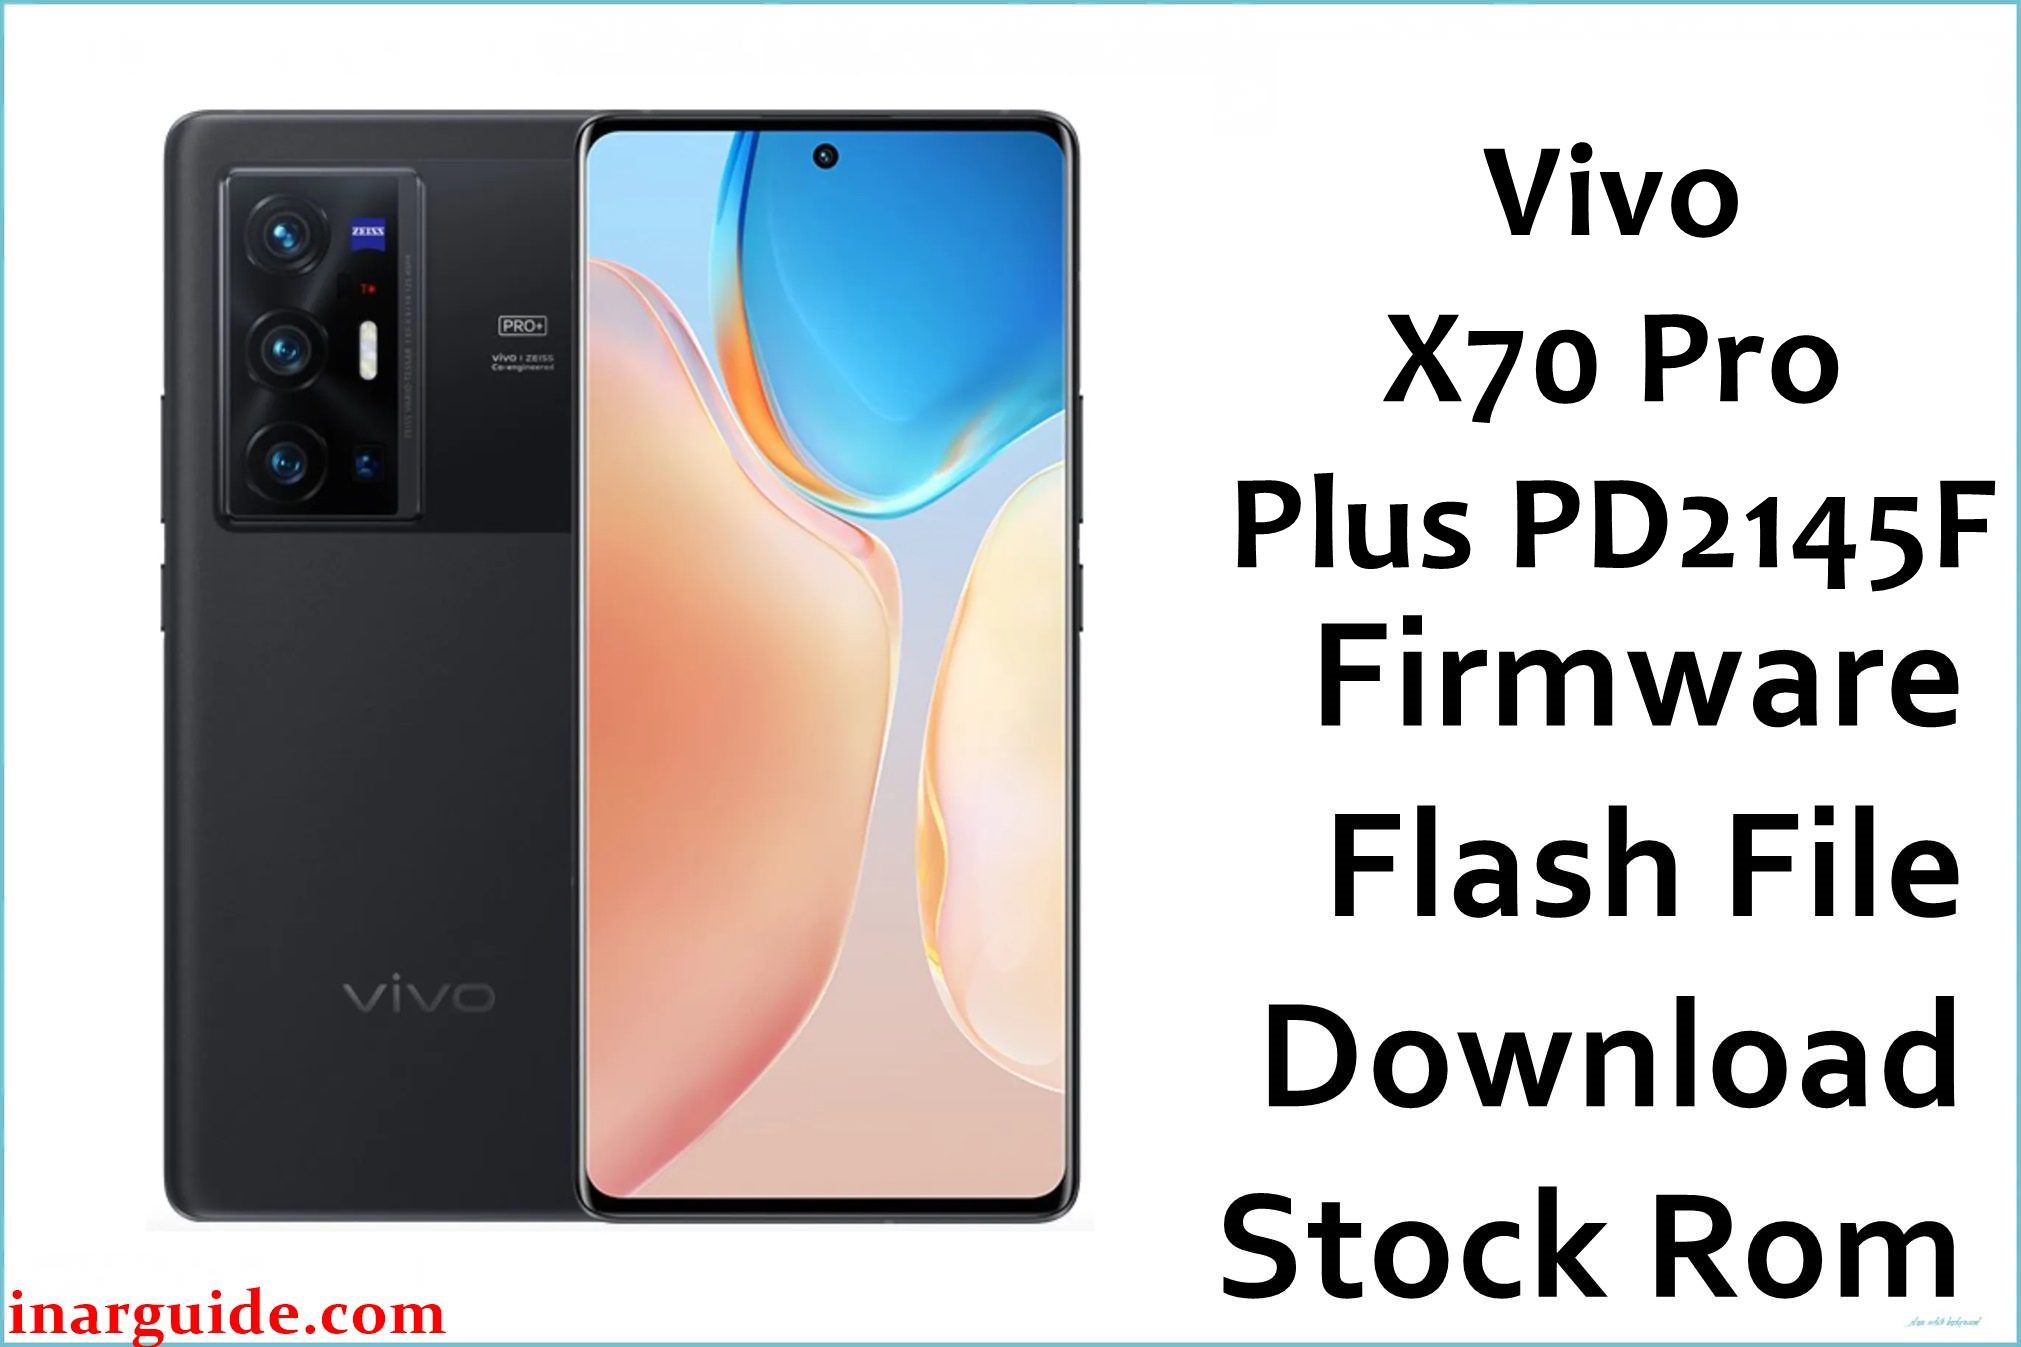 Vivo X70 Pro Plus PD2145F